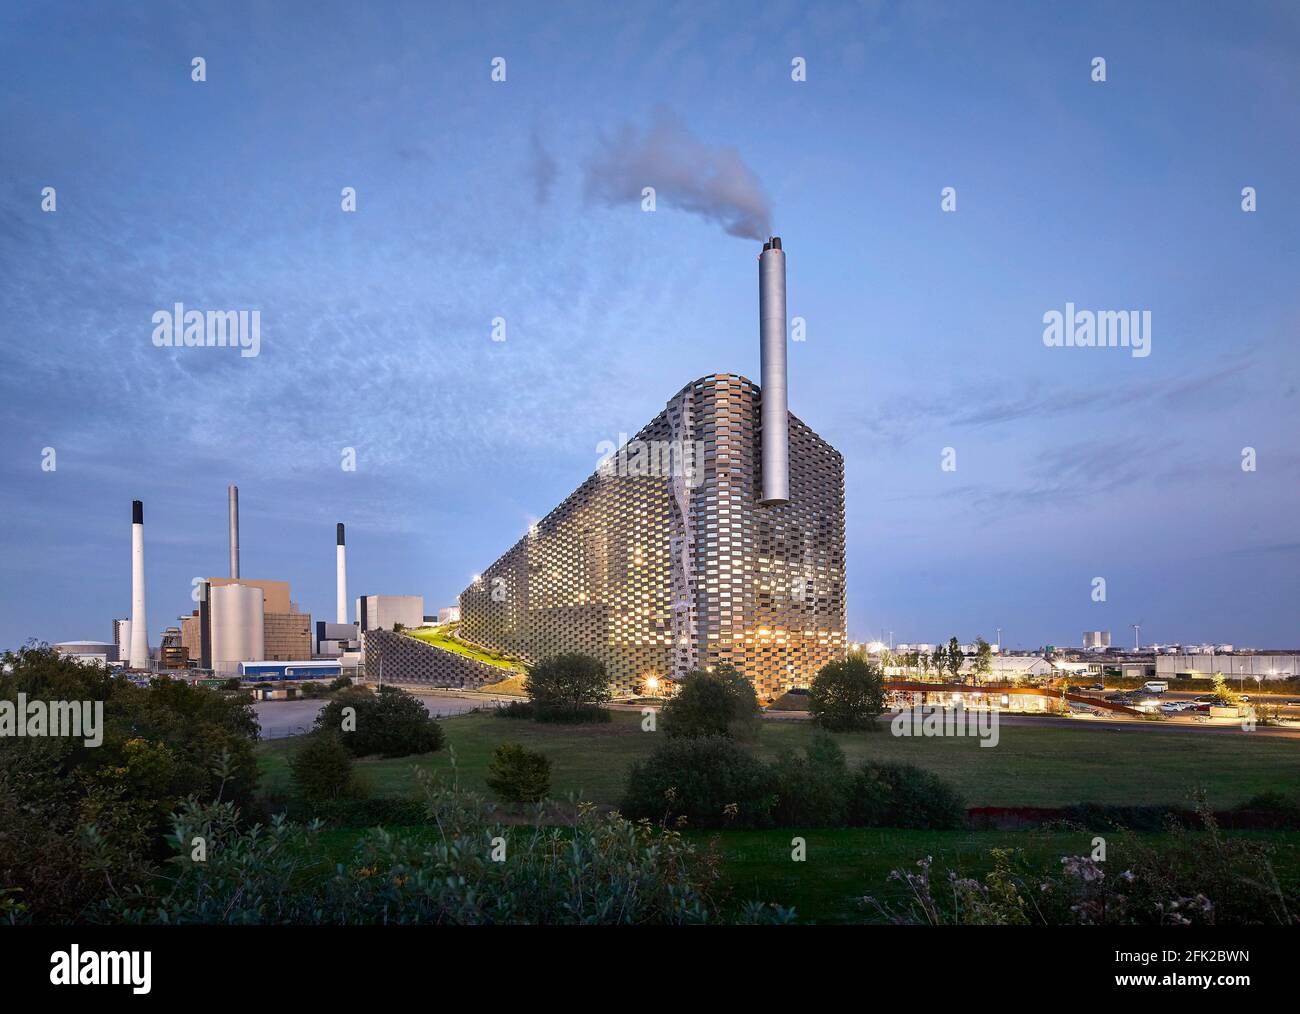 Paesaggio industriale con centrale elettrica al crepuscolo. Centrale elettrica di CoppenHill, Copenhagen, Danimarca. Architetto: BIG Bjarke Ingels Group, 2019. Foto Stock